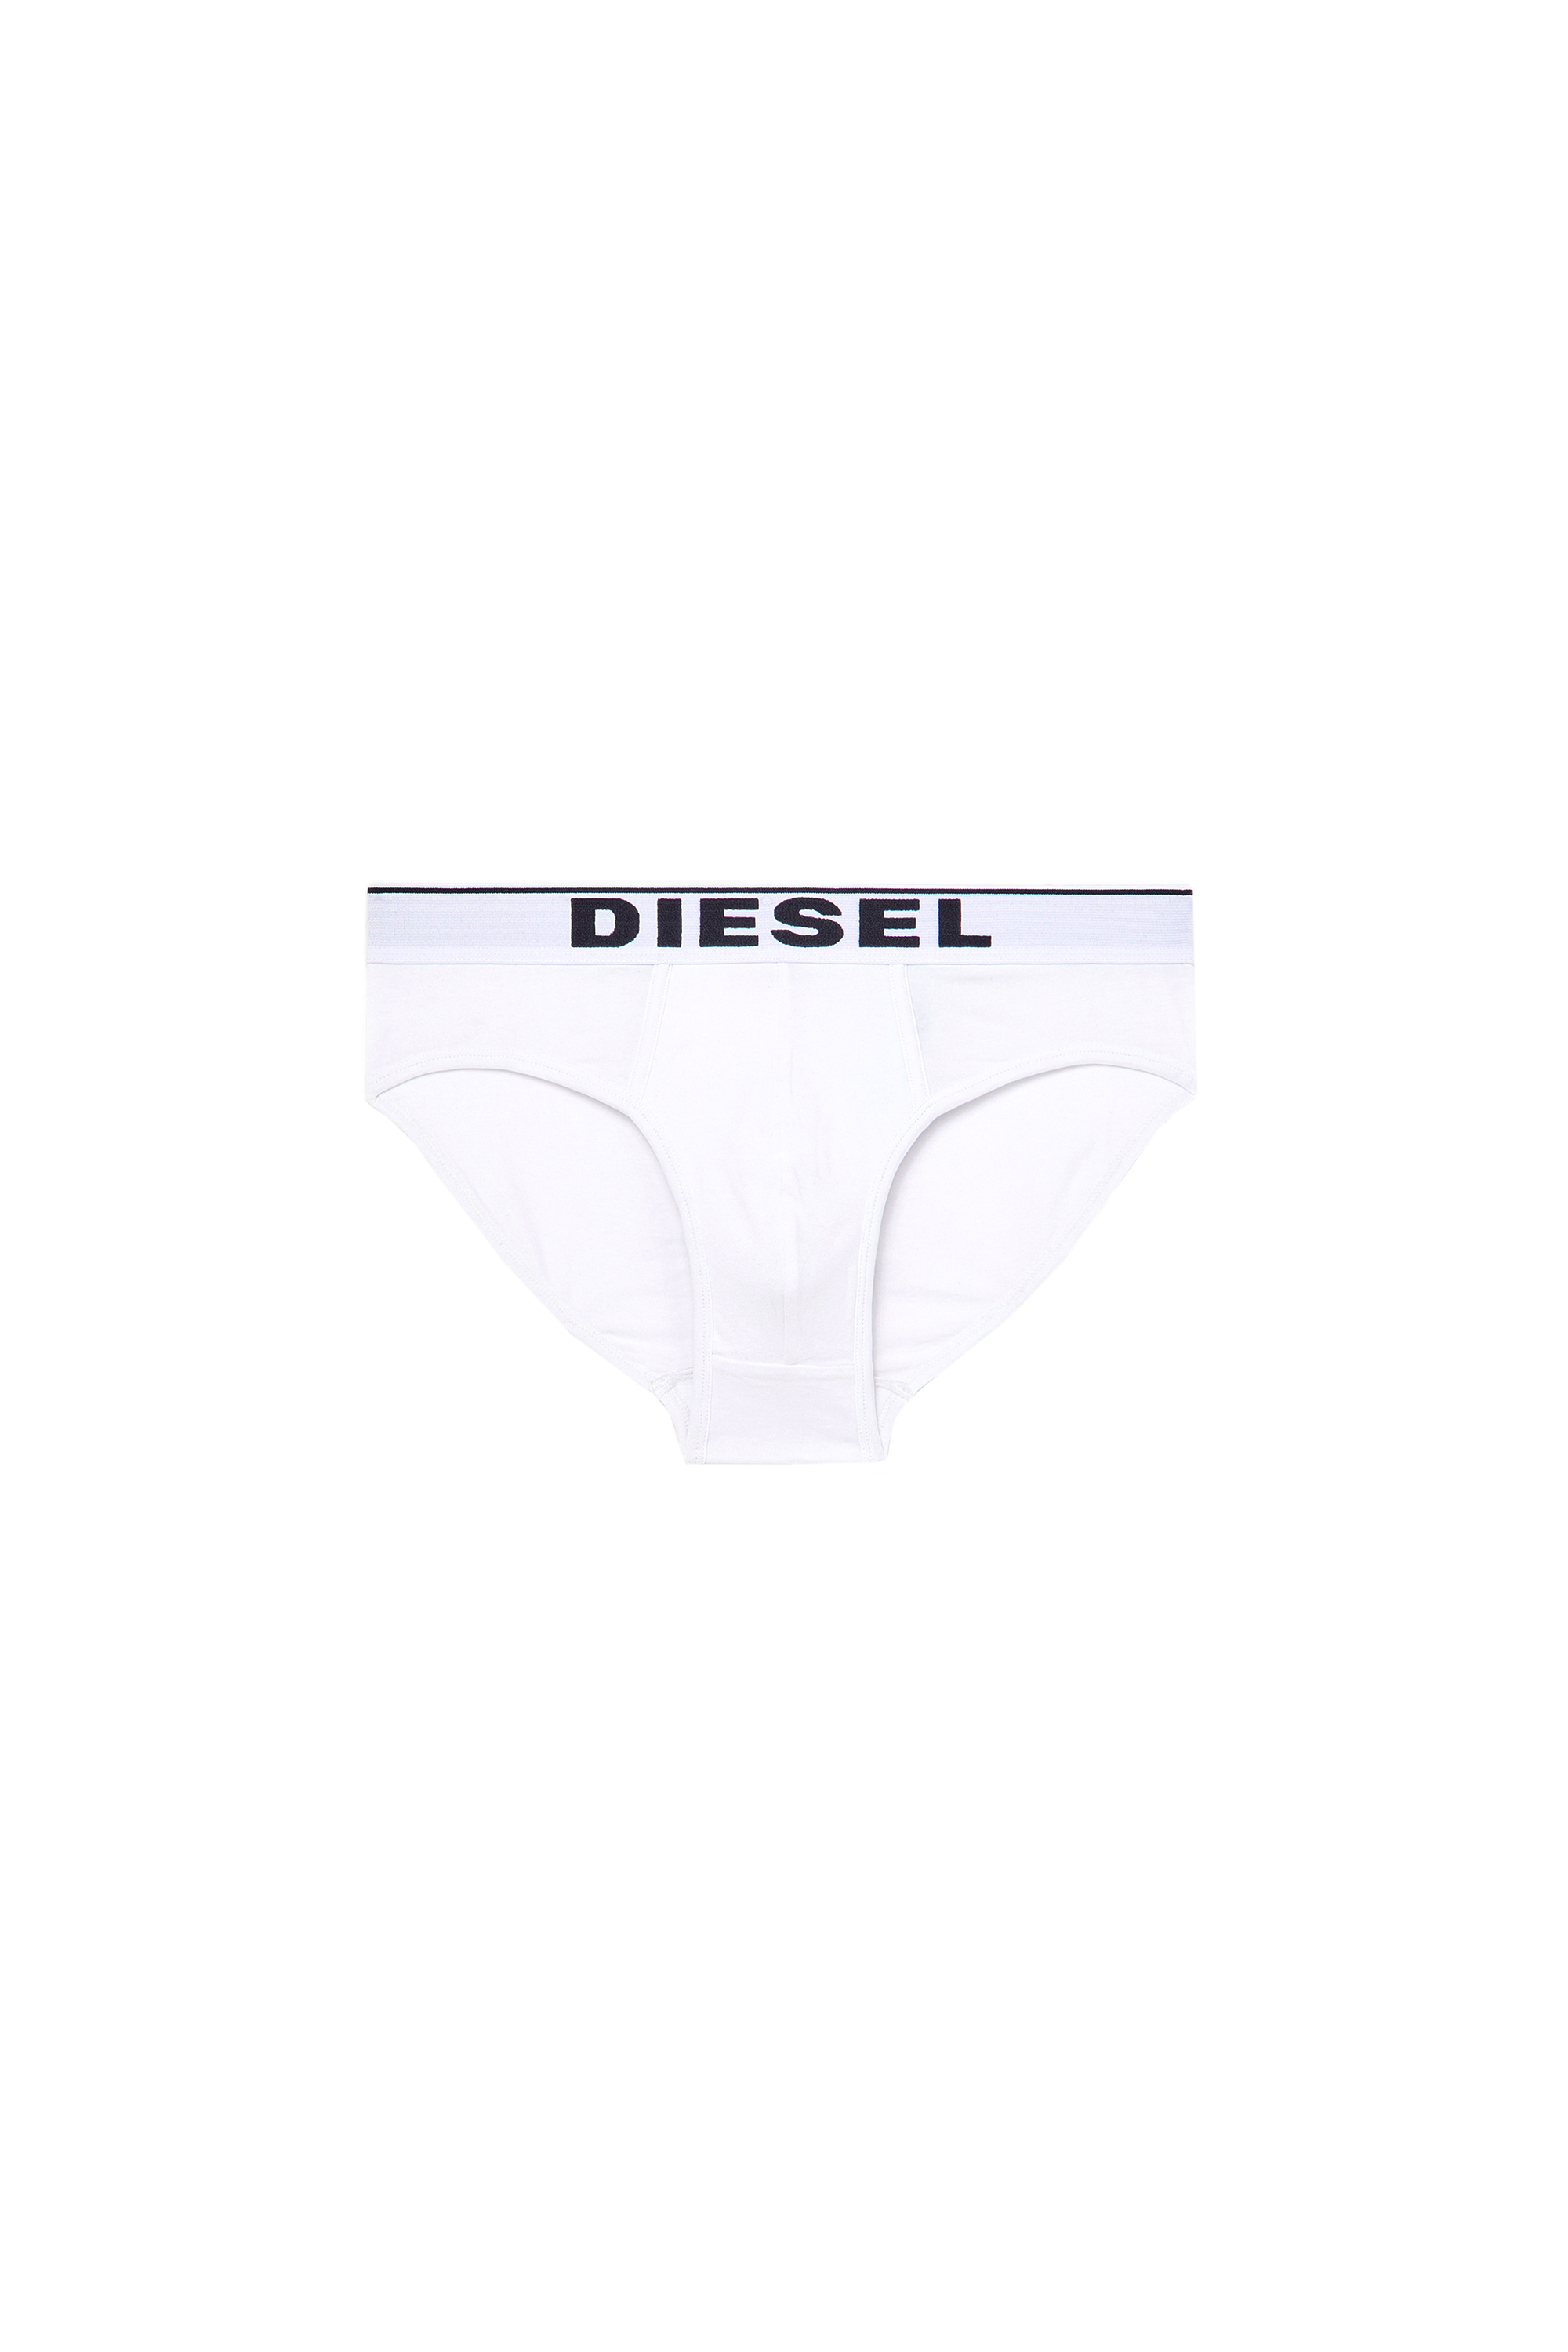 Diesel - UMBR-ANDRE, White - Image 2